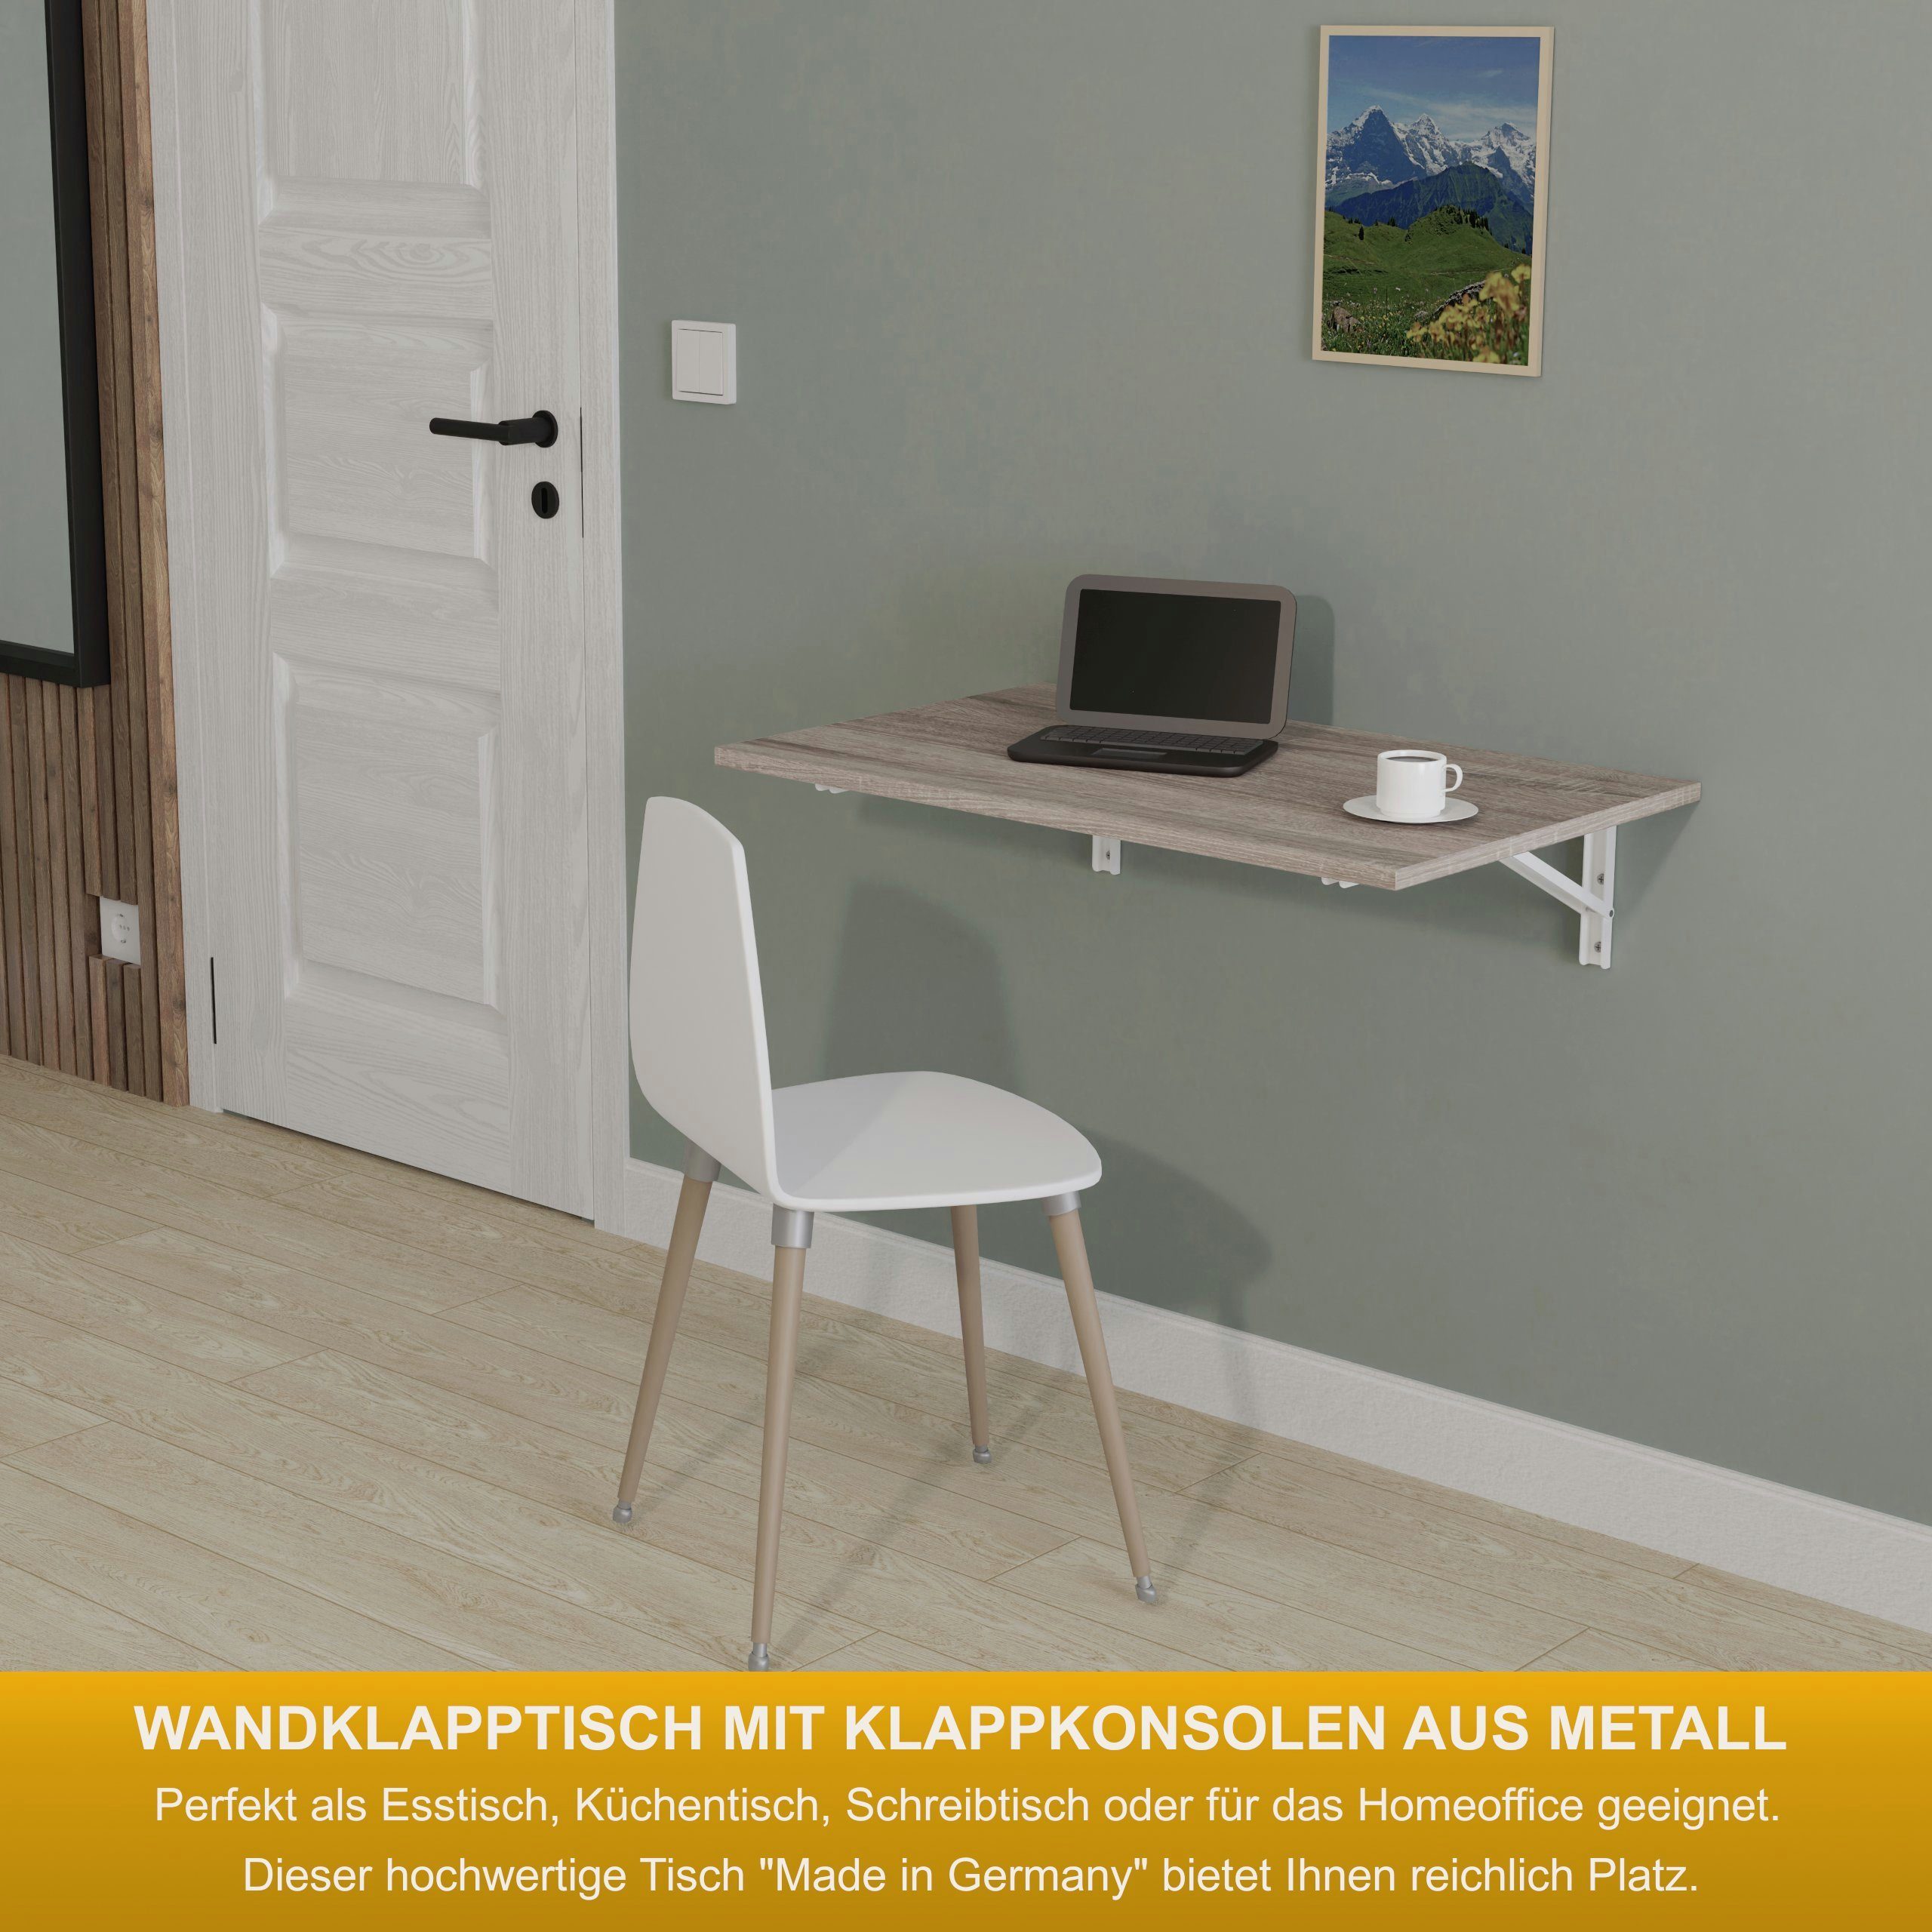 KDR Produktgestaltung Eiche Wand Wandklapptisch Tisch, Schreibtisch 80x50 Sonoma Esstisch Küchentisch Klapptisch